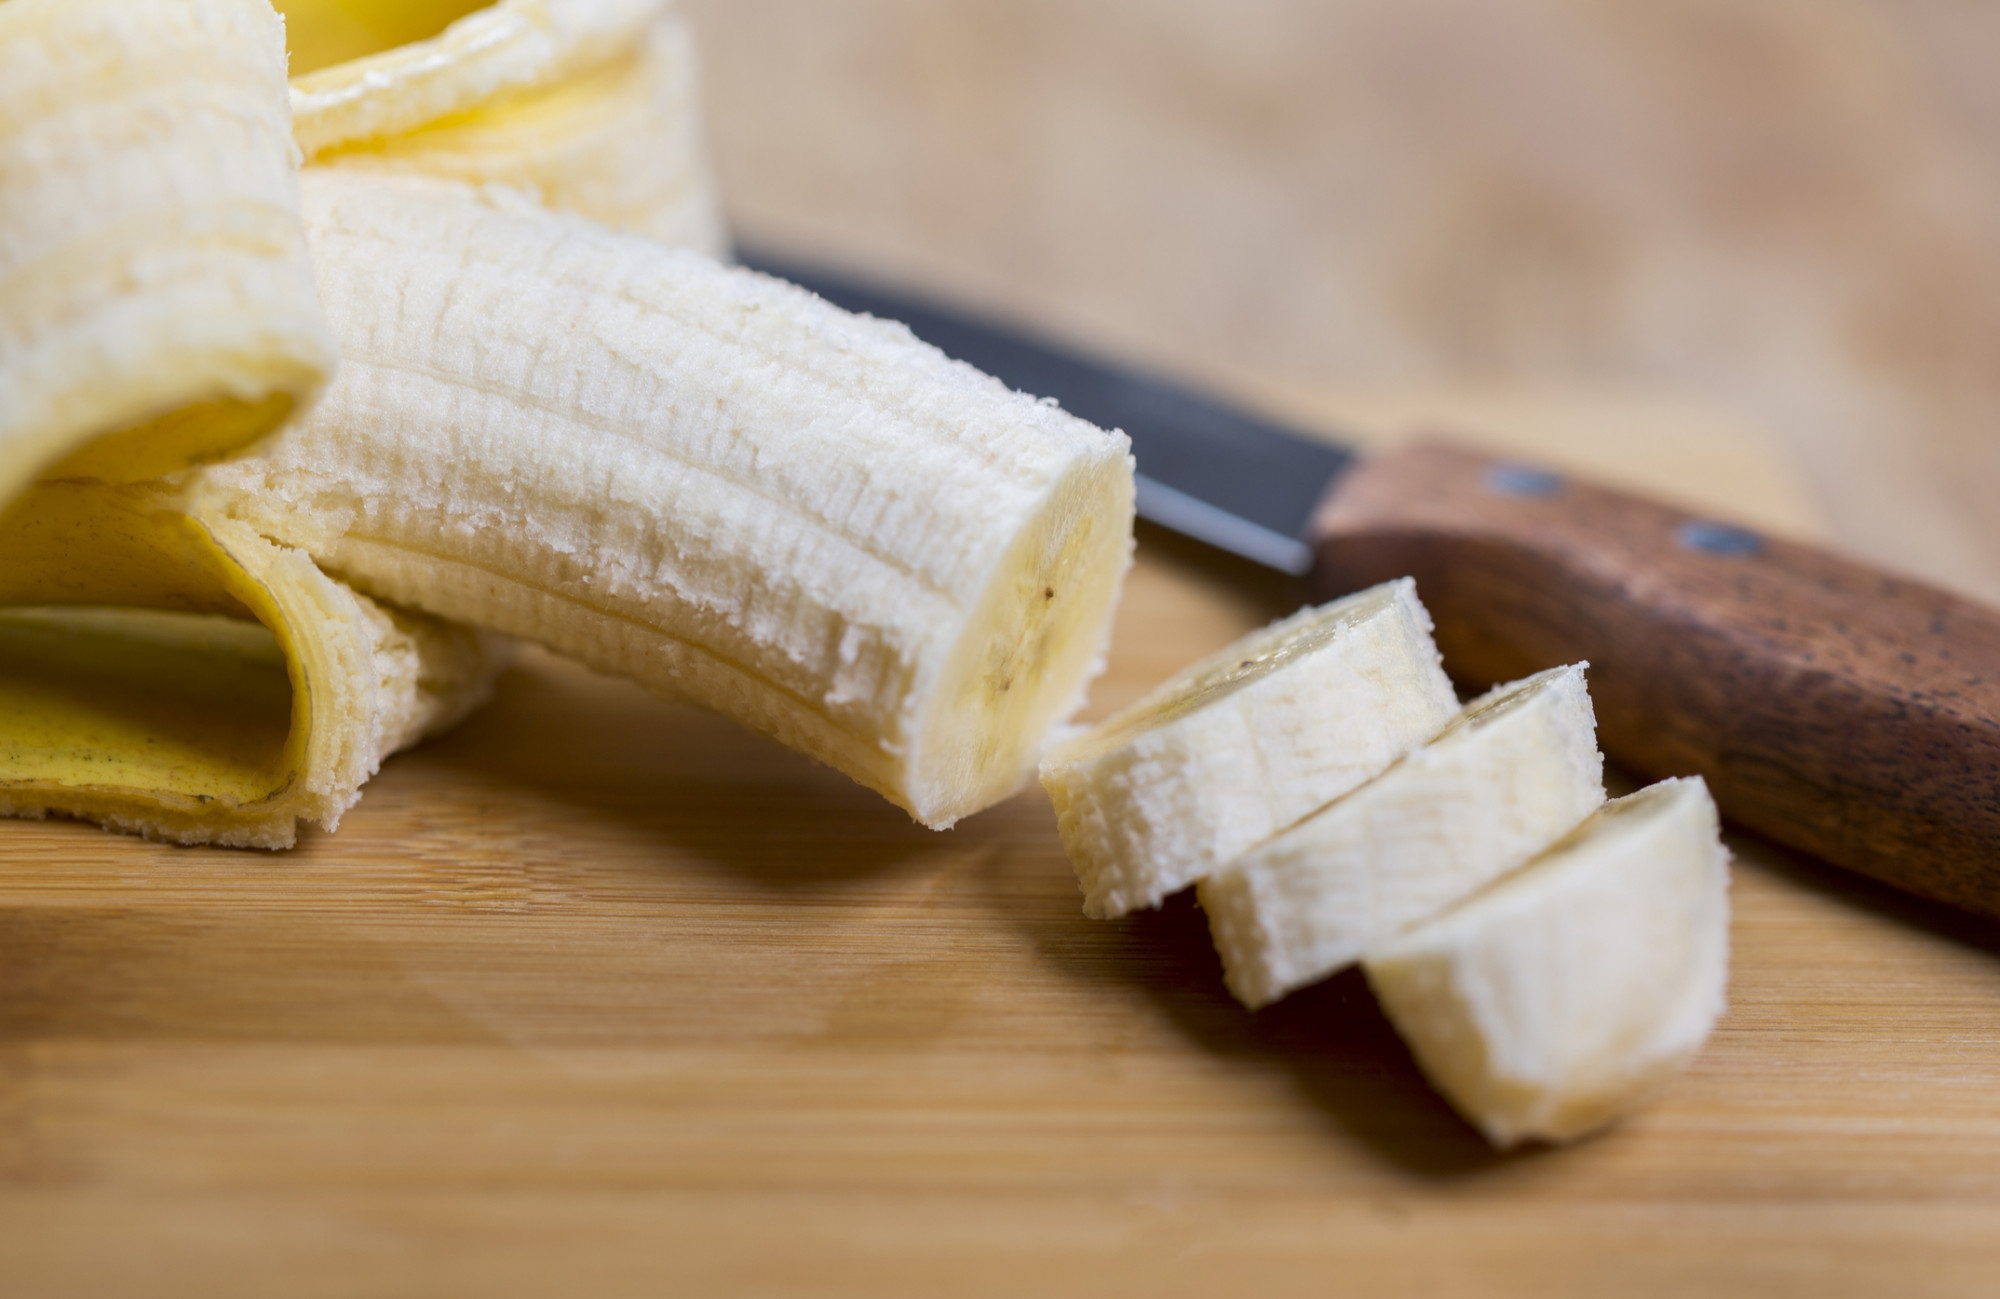 Banana: conheça os tipos, benefícios e receitas - Minha Vida